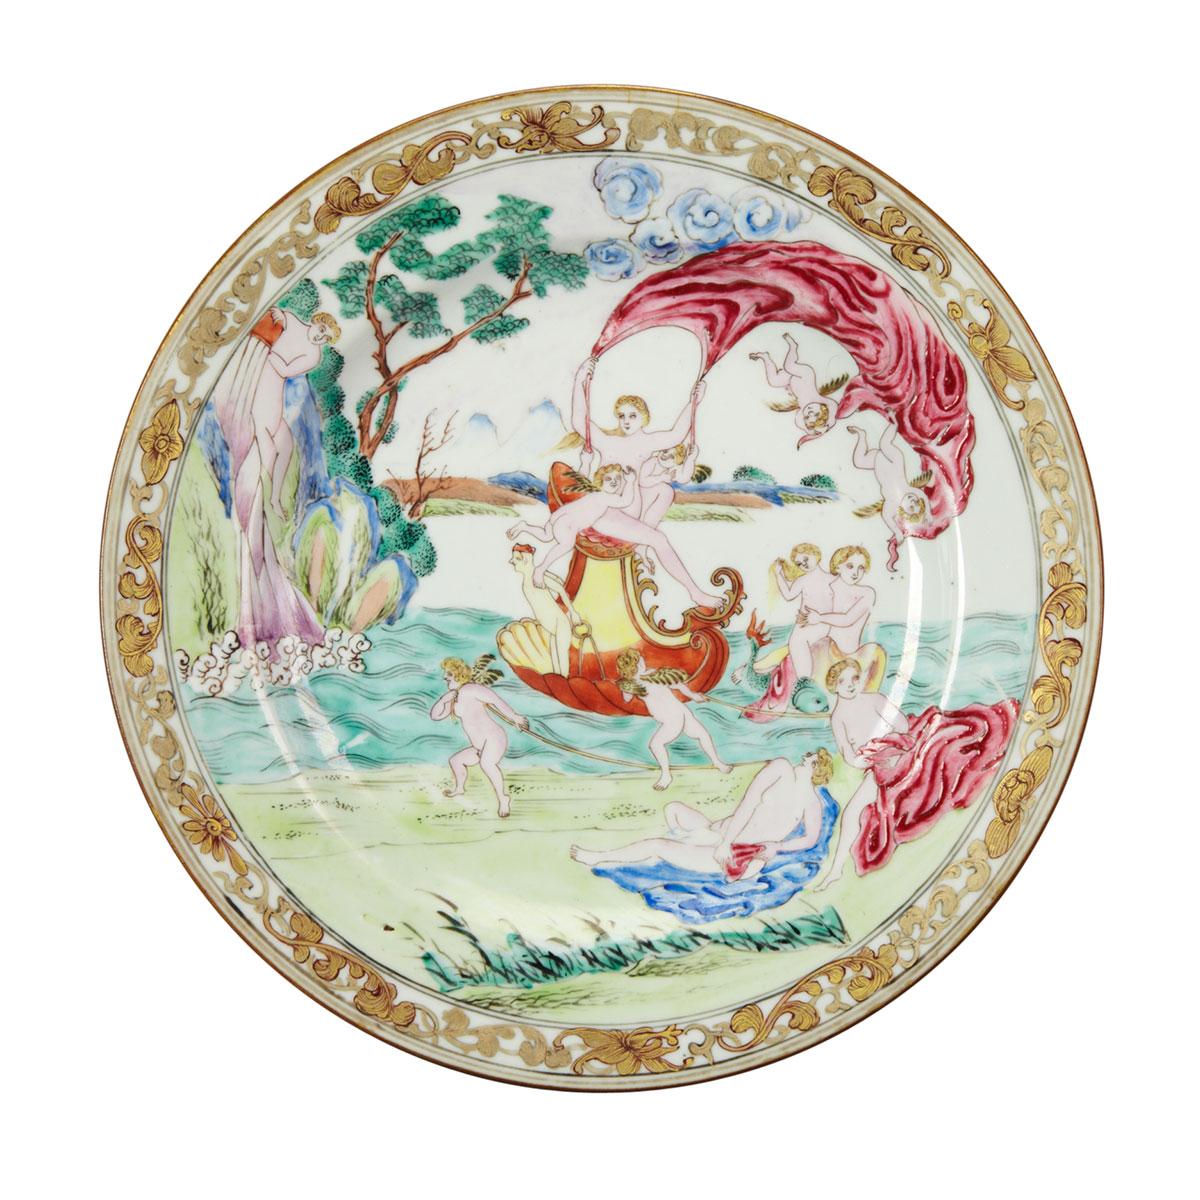 Unusual Export Famille Rose European Subject ‘Venus’ Plate, 18th/19th Century